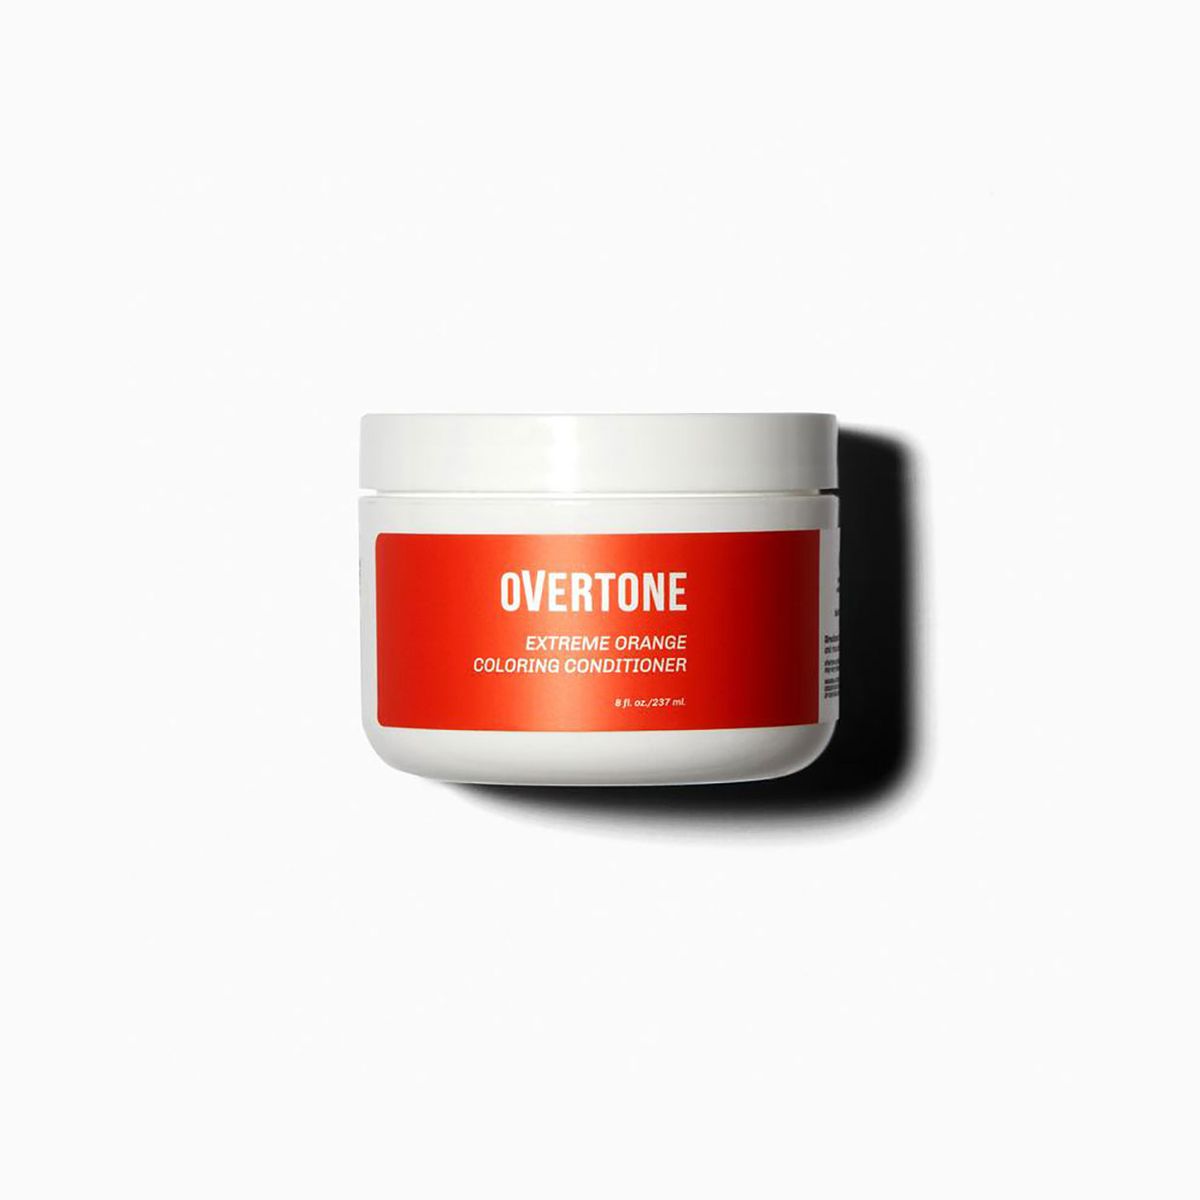 Overtone Extreme Orange